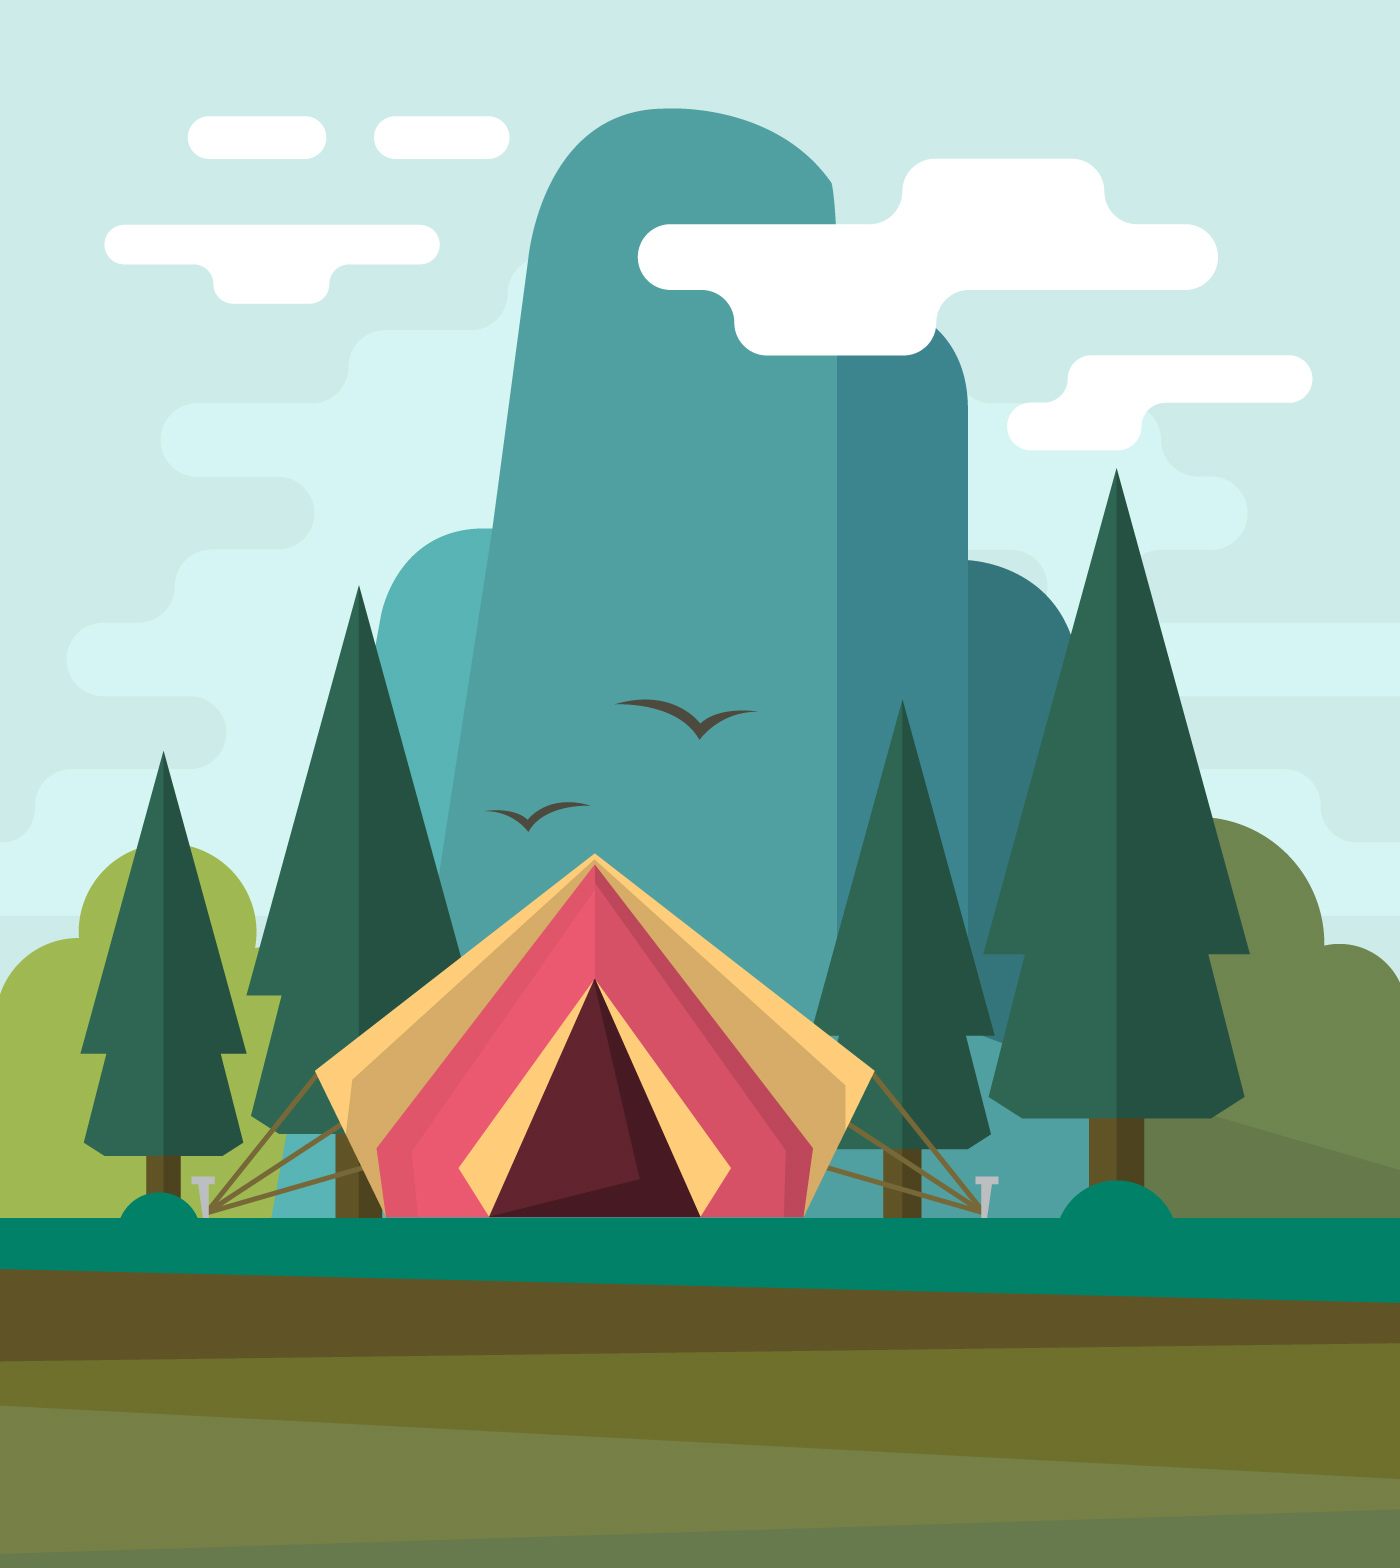 Flat Camping Landscape - Download Free Vectors, Clipart ...